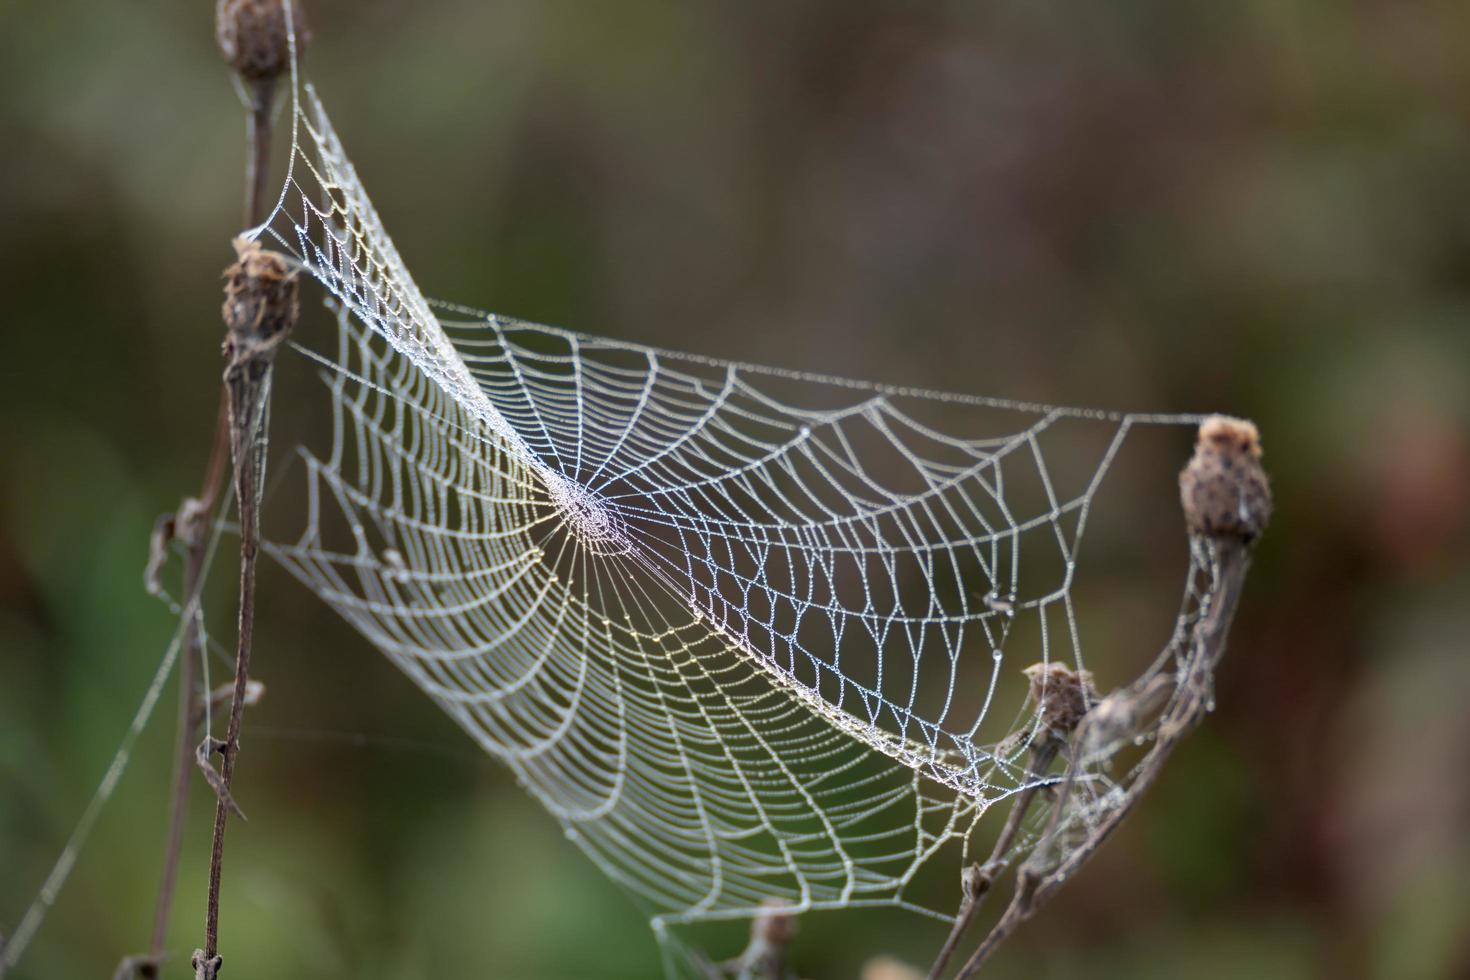 Spinnennetze, die mit Wassertropfen aus dem Herbsttau glänzen foto